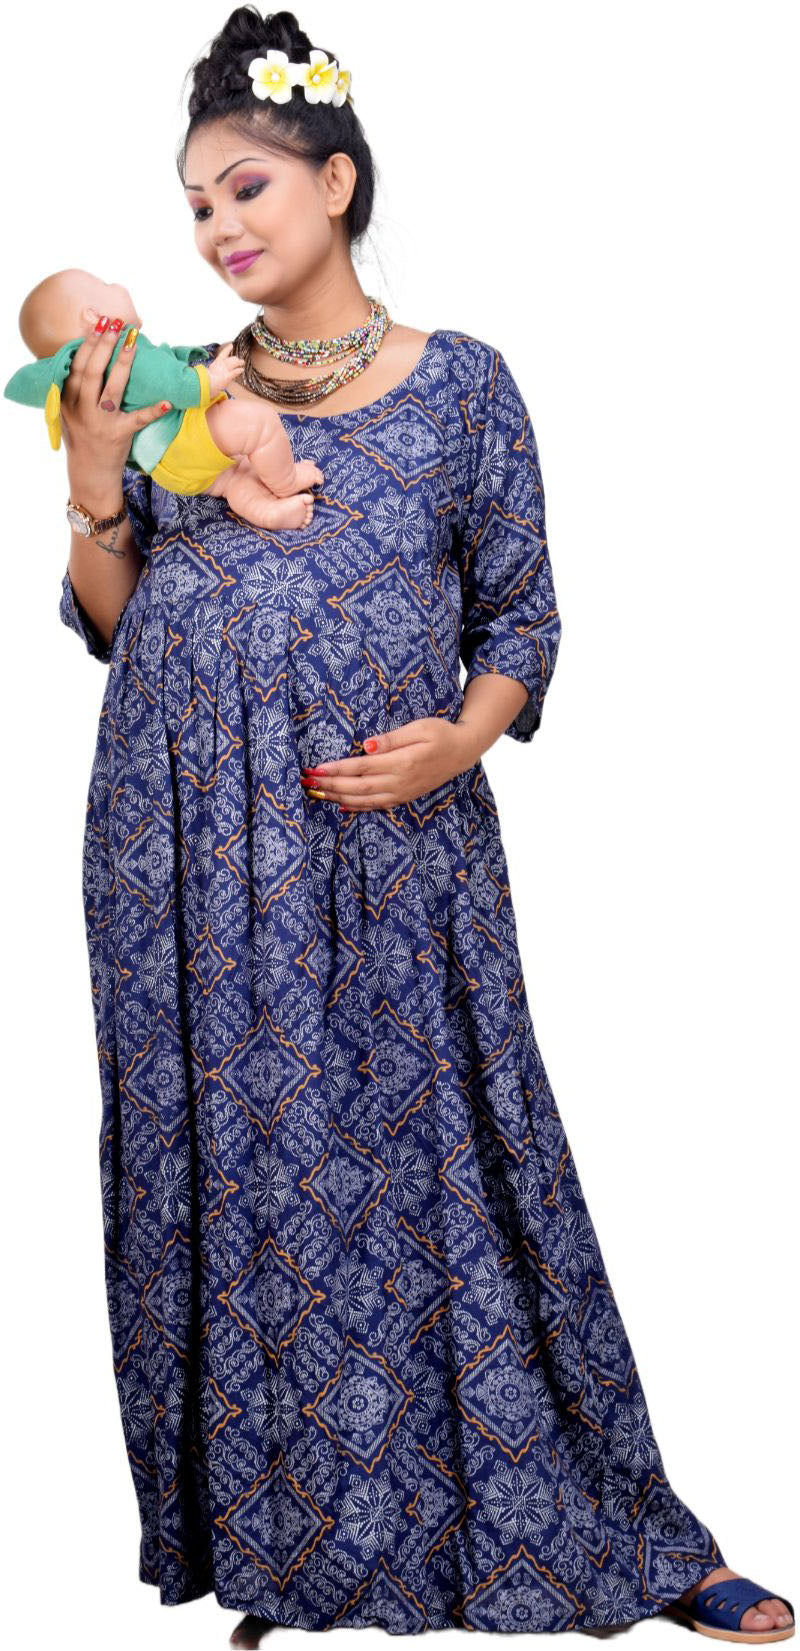 Maternity wear| Pregnancy wear haul| pregnancy night wear| Zivame sale  haul| - YouTube